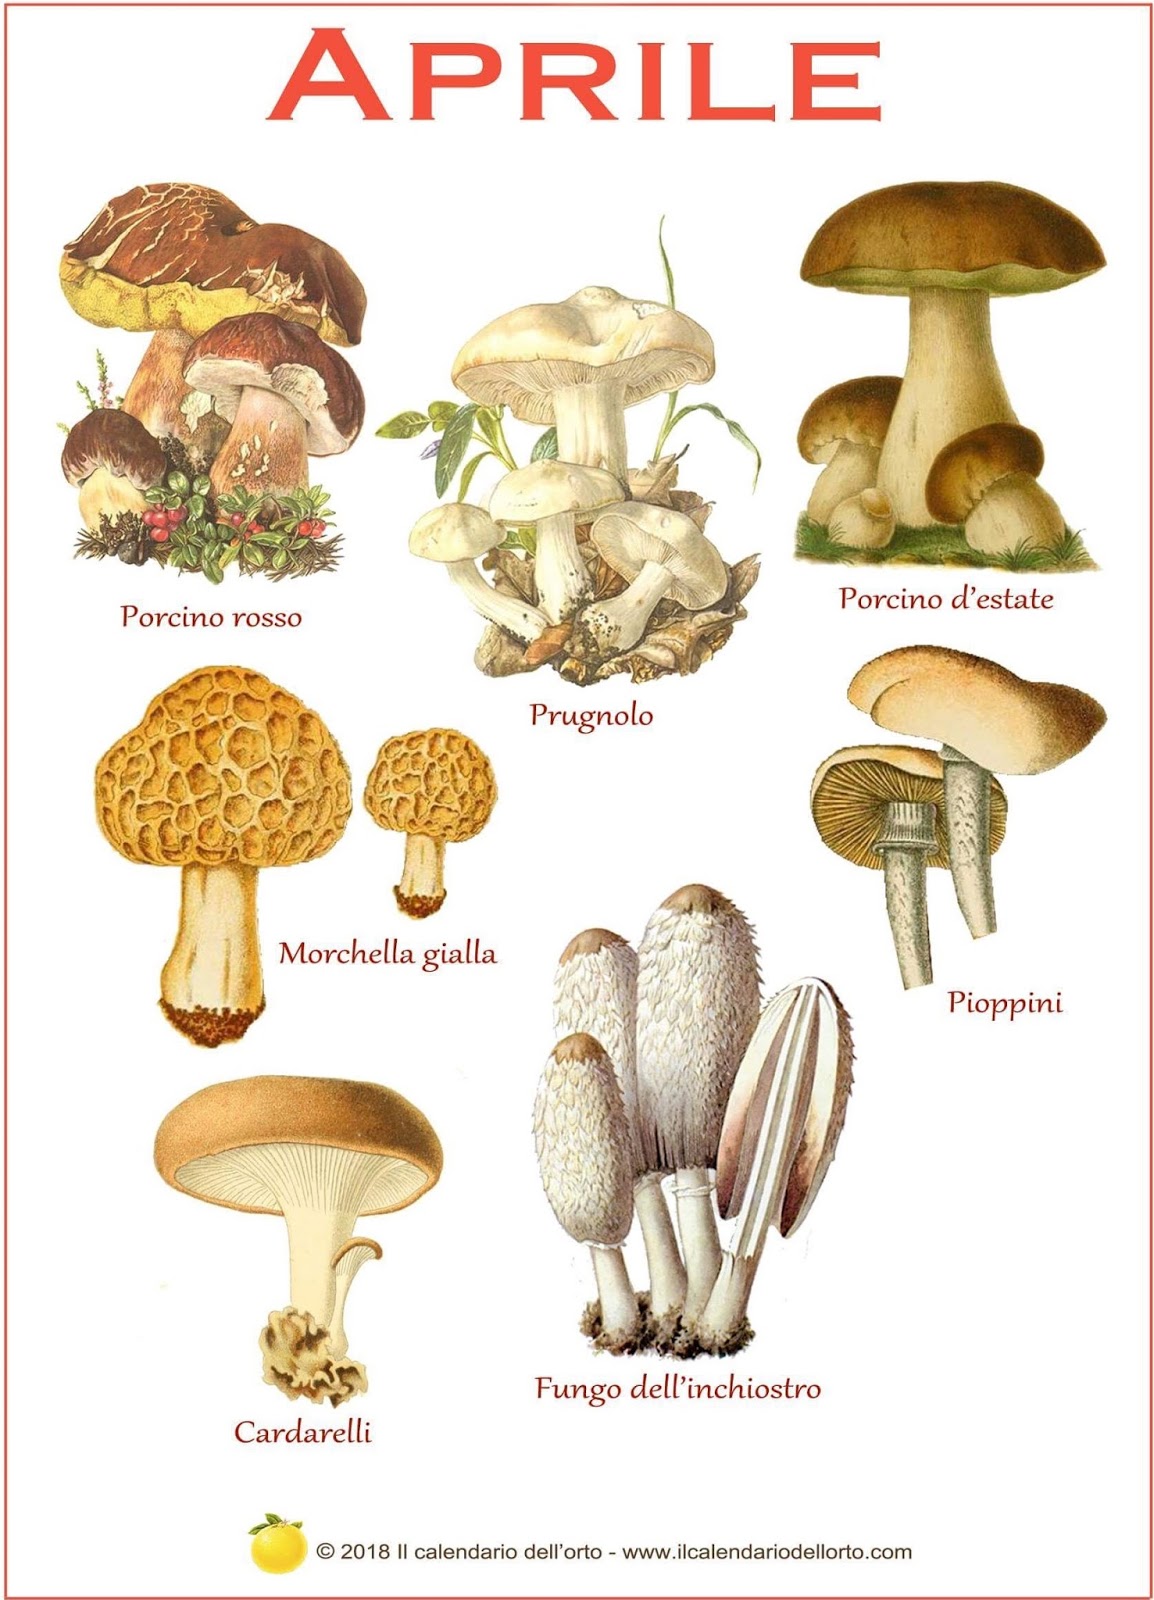 funghi che si trovano in aprile